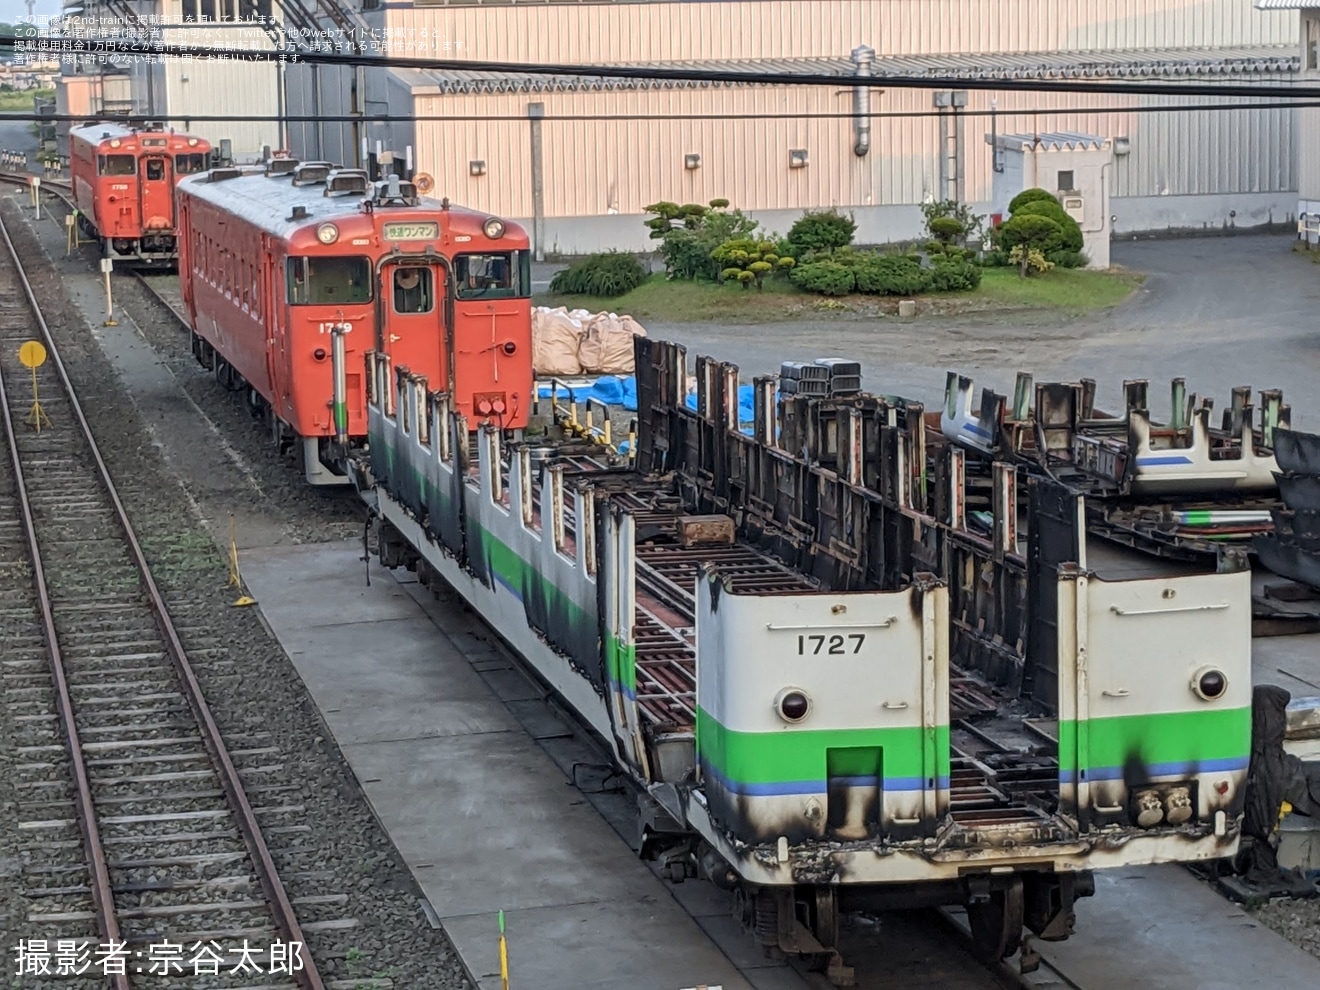 【JR北】キハ40-1727が釧路運輸車両所で解体作業中の拡大写真